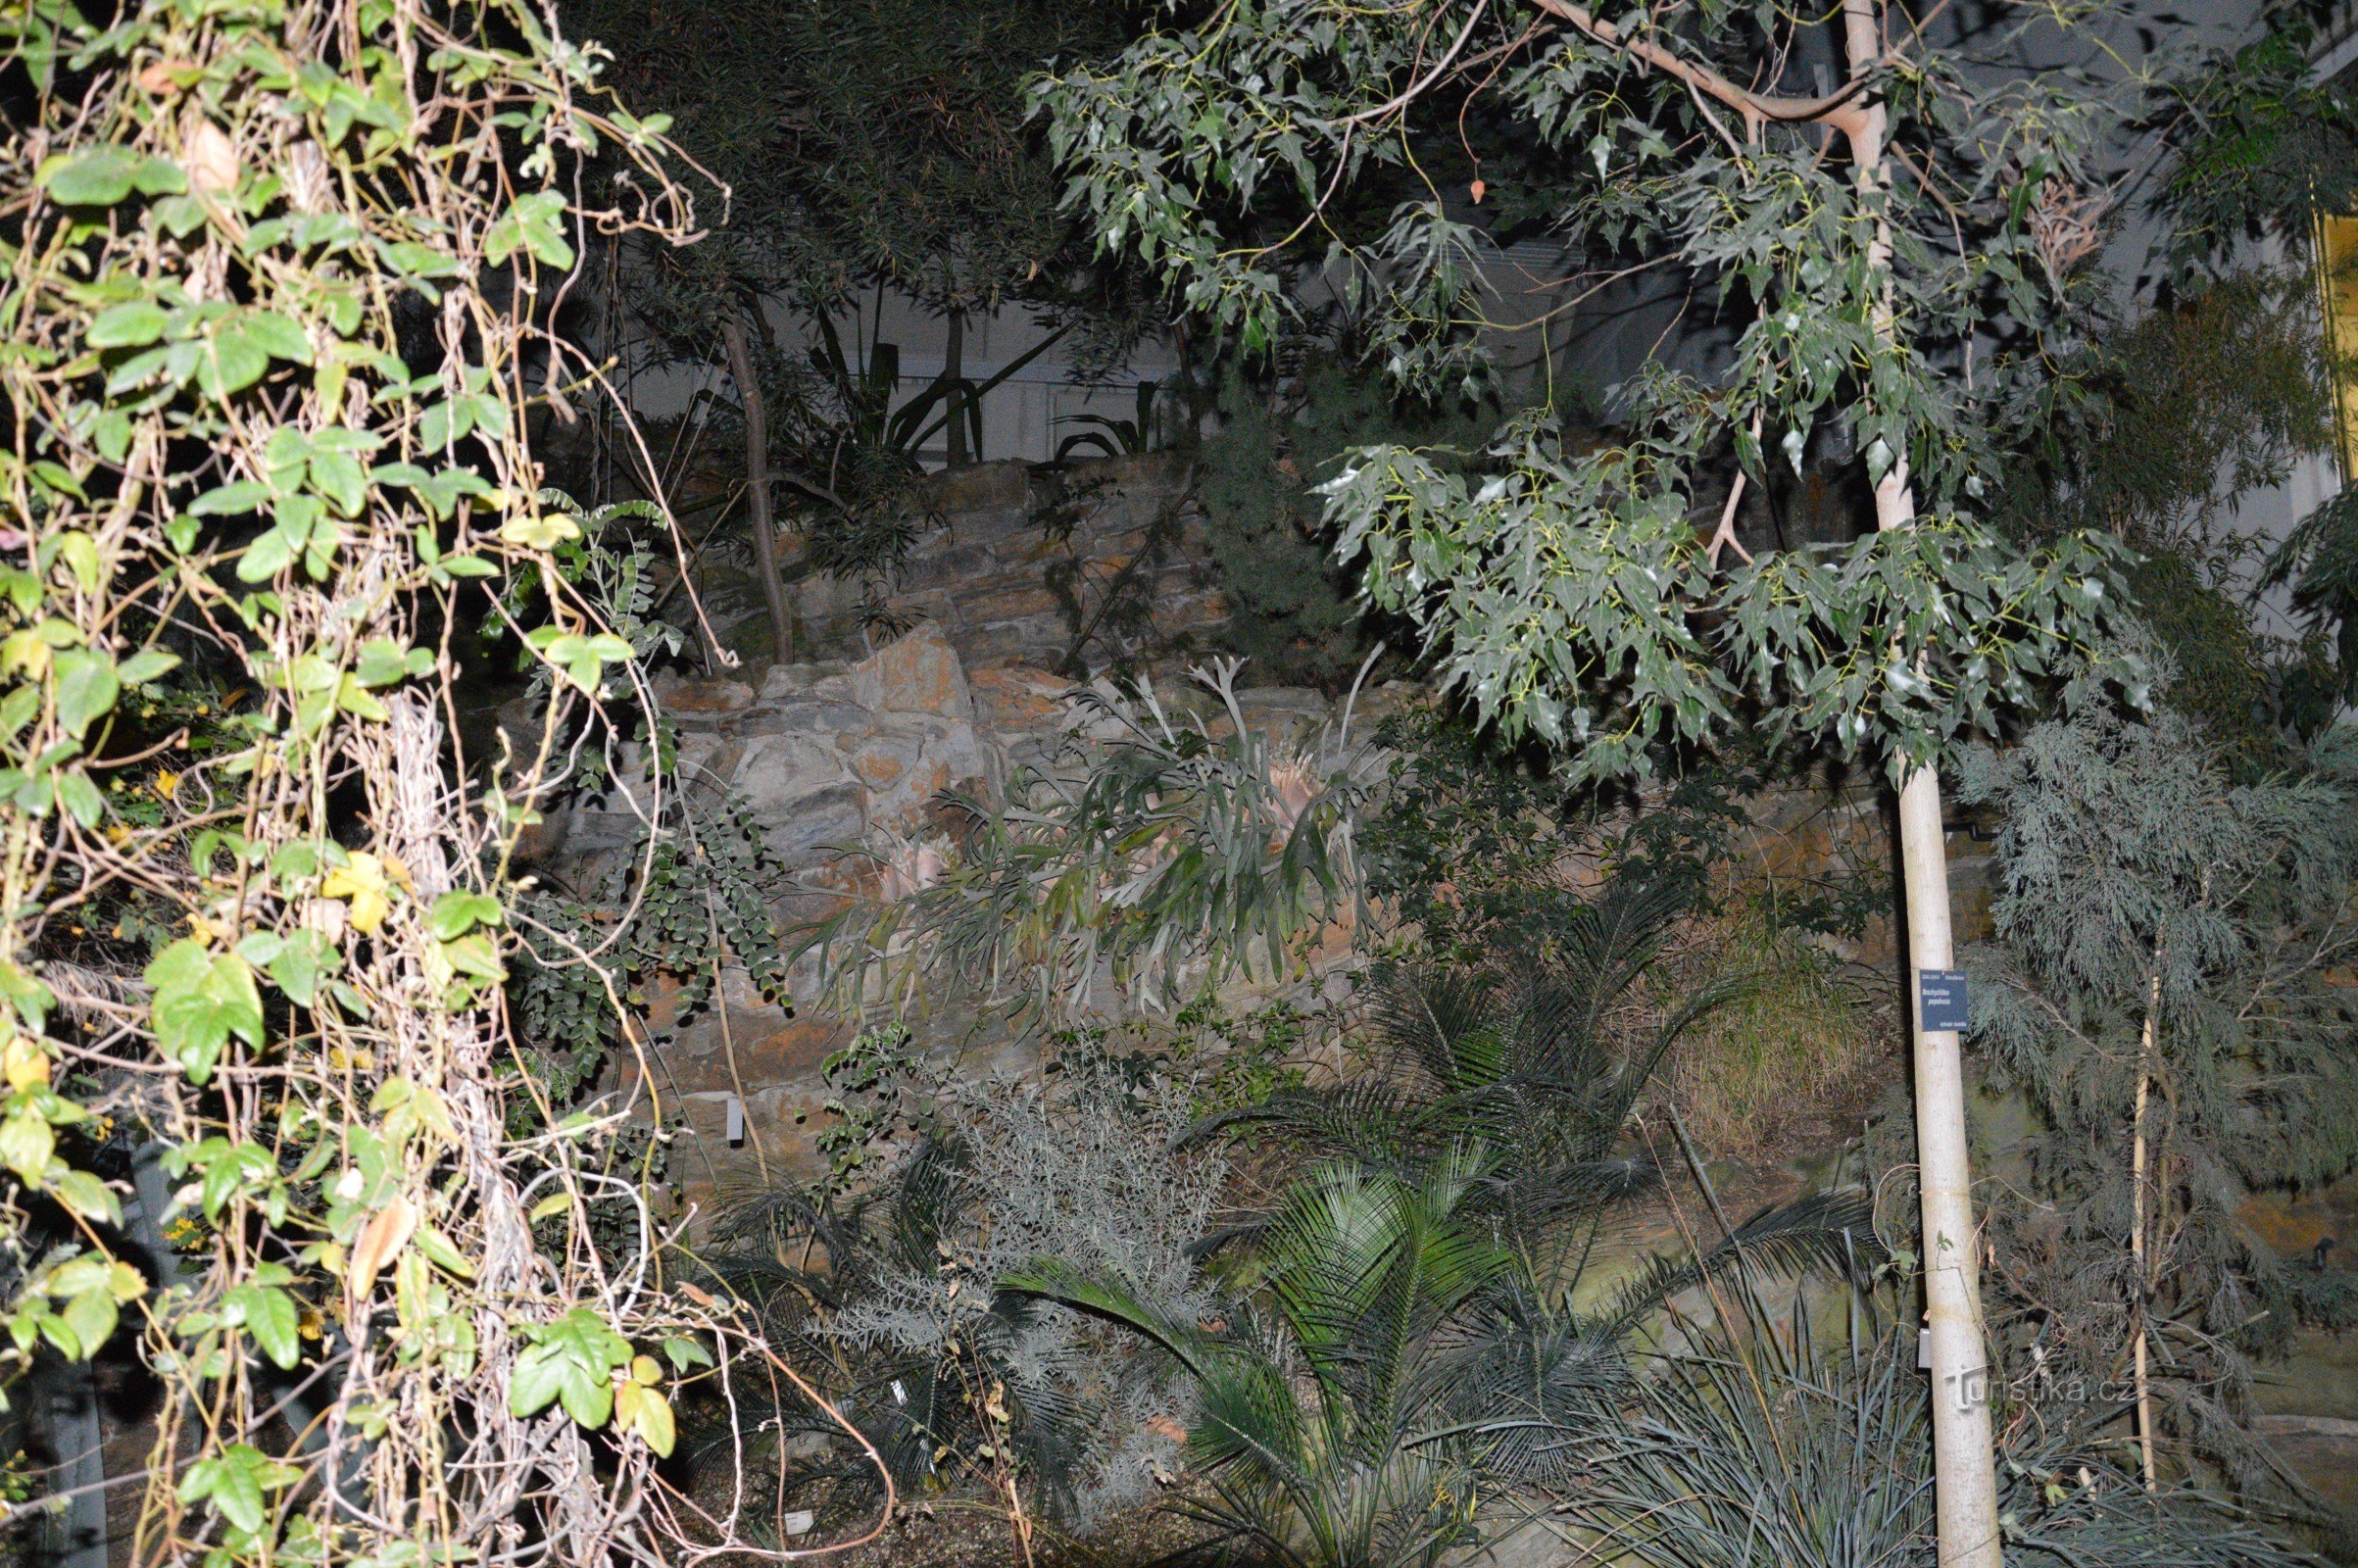 Estufa do jardim botânico Fata morgana à noite